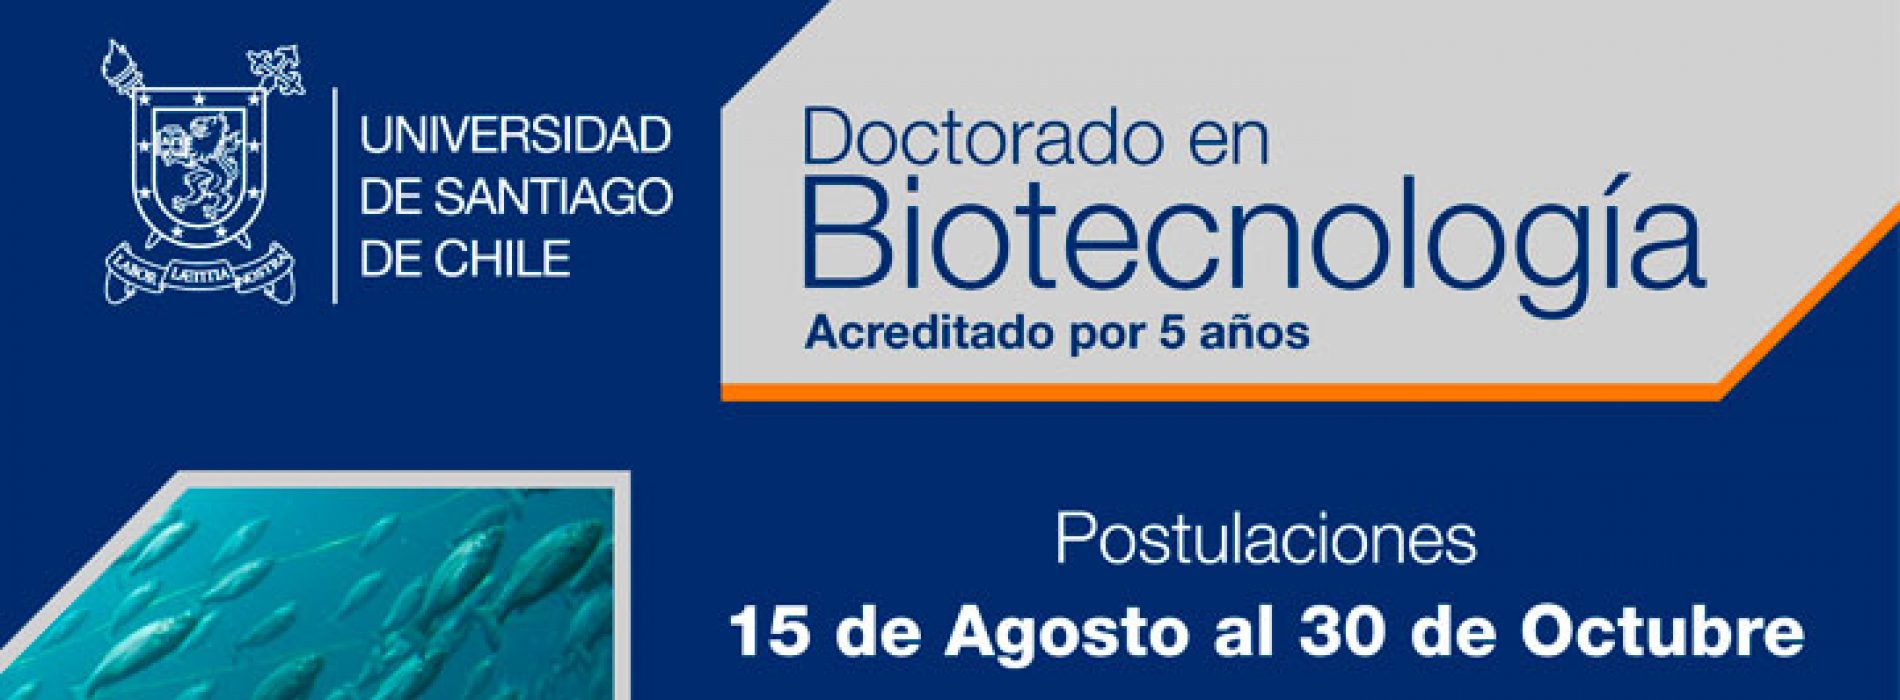 Doctorado en Biotecnología